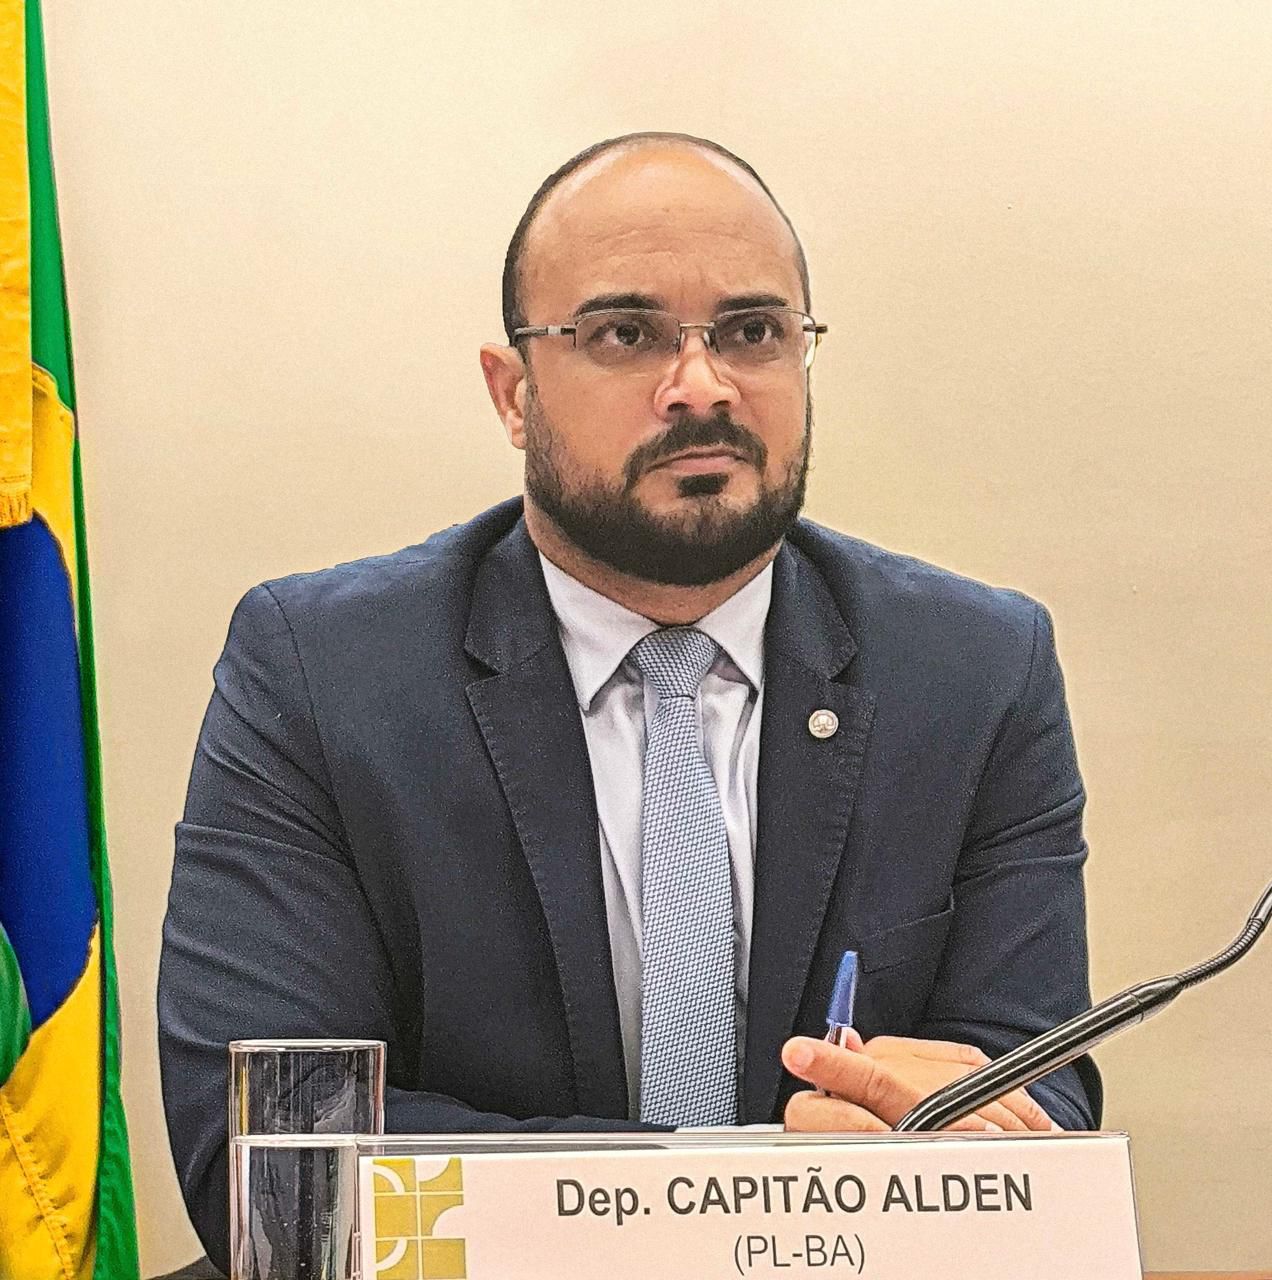 Deputado Capitão Alden quer derrubar lei combate a fake news baiana 